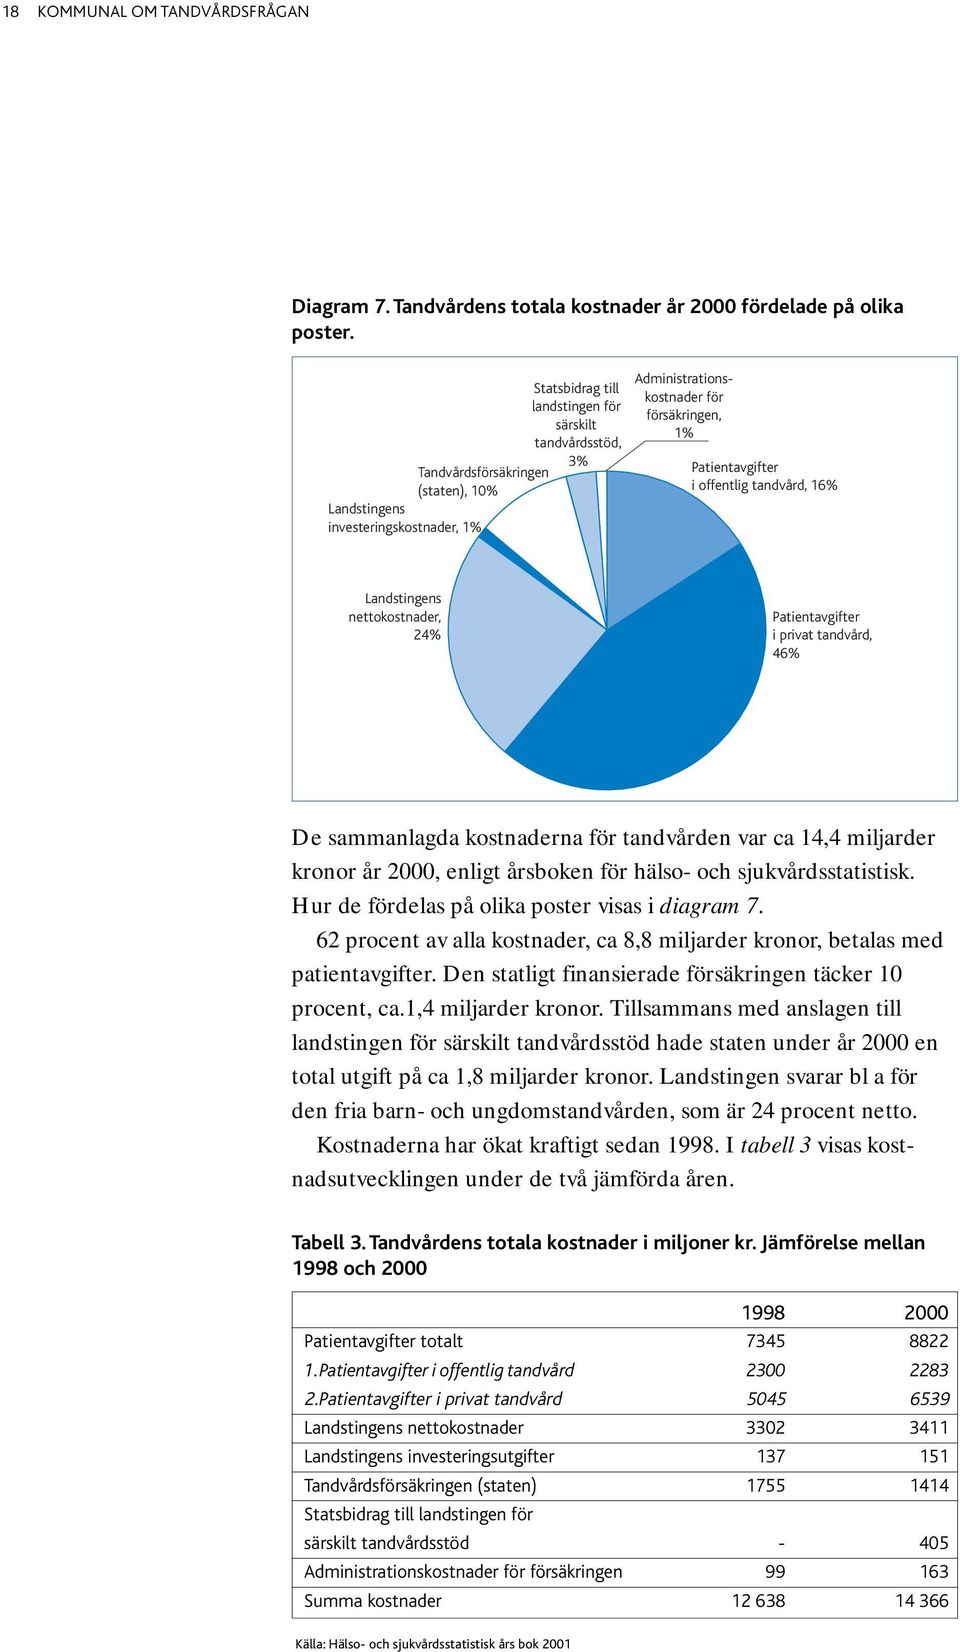 offentlig tandvård, 16% Landstingens nettokostnader, 24% Patientavgifter i privat tandvård, 46% De sammanlagda kostnaderna för tandvården var ca 14,4 miljarder kronor år 2000, enligt årsboken för